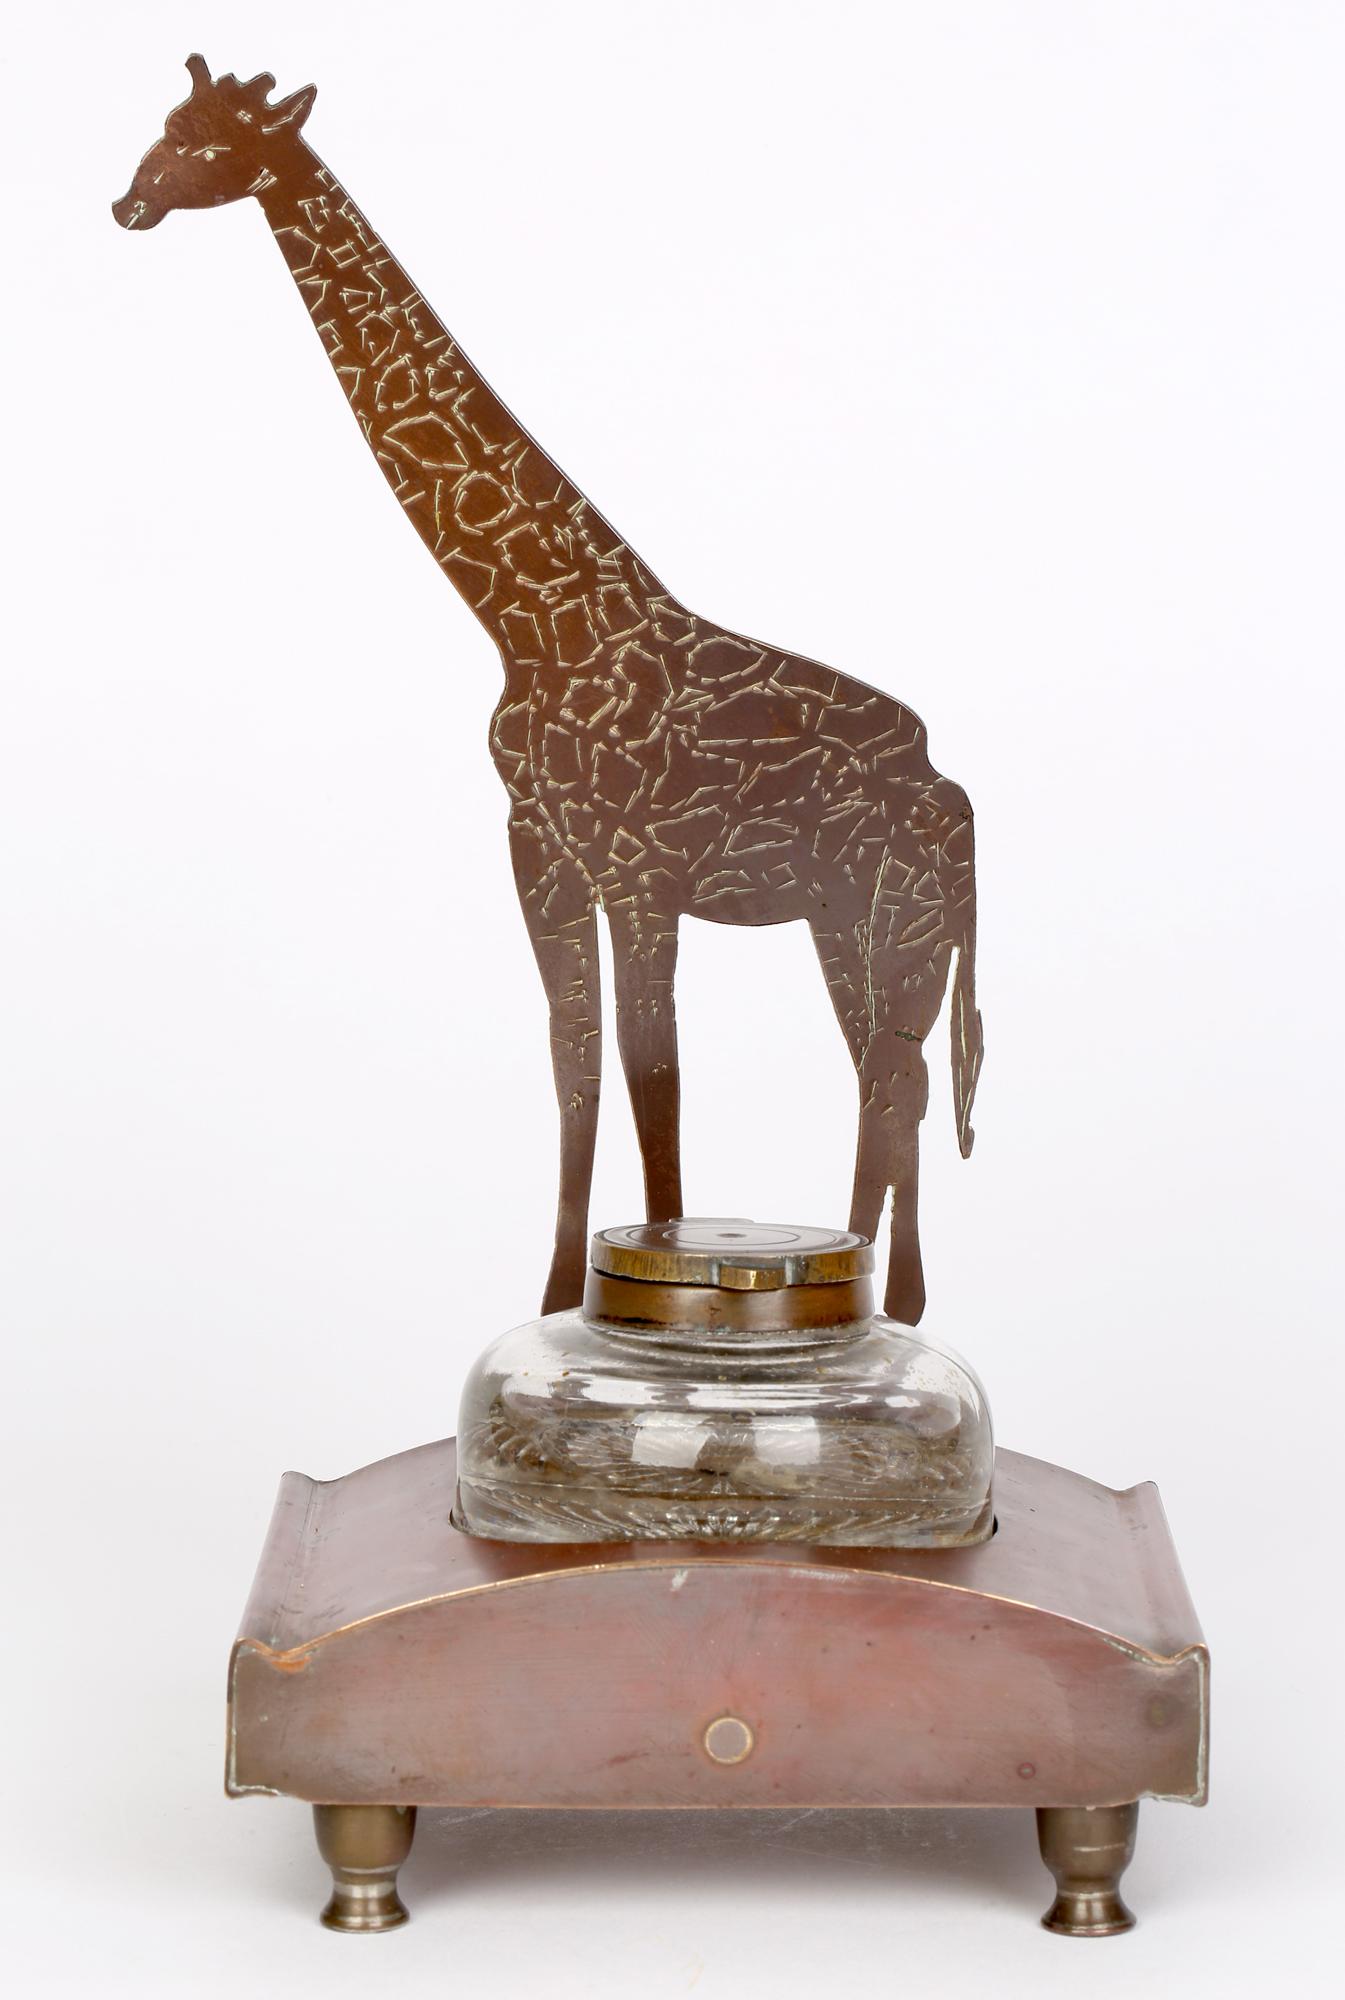 Ignatius Taschner 'German, 1871-1913' Jugendstil Giraffe Mounted Ink Stand 4